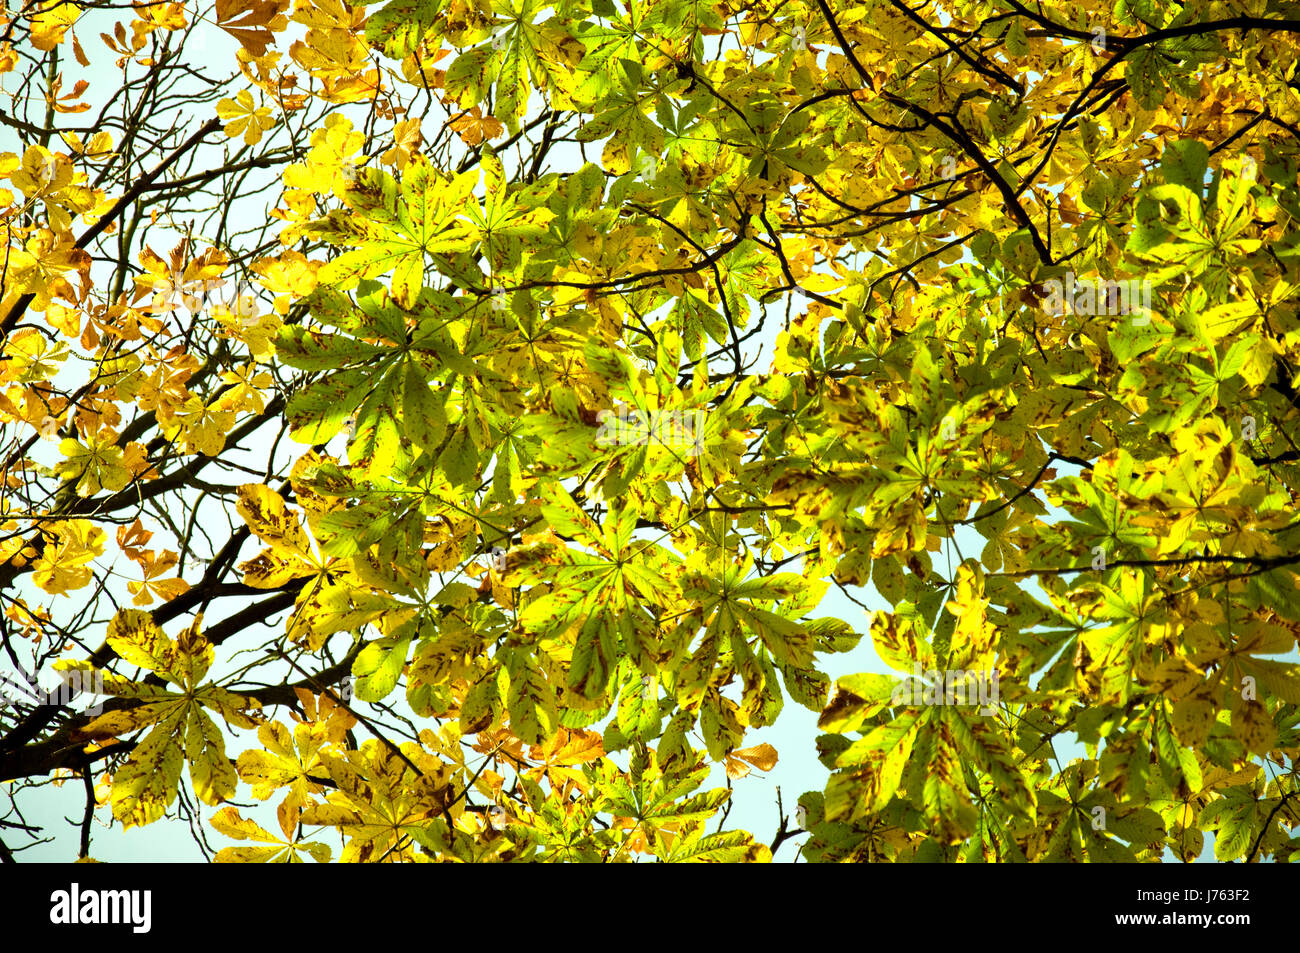 Las hojas del árbol Sol sol firmamento cielo castaño caída de árbol de hoja de otoño Foto de stock